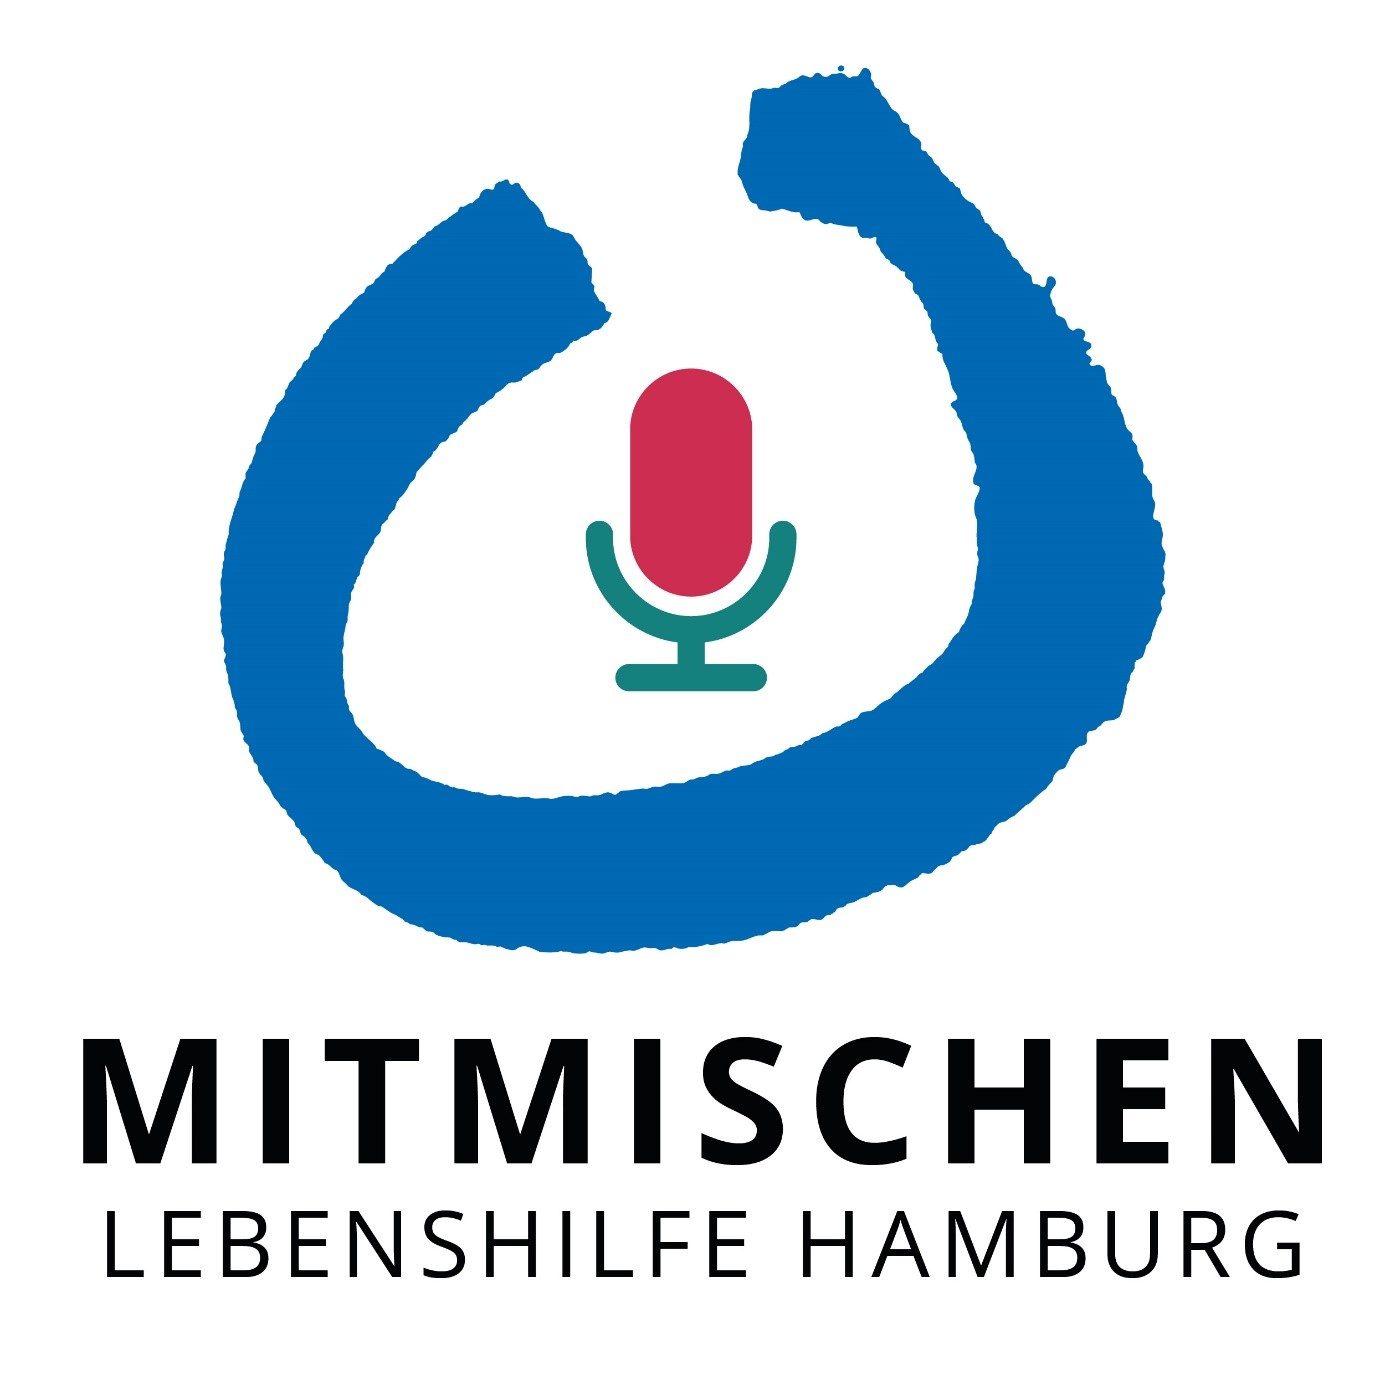 Grafik / Logo: Blauer, geöffneter Halbkreis, in der Mitte Rot-grünes Mikrofon